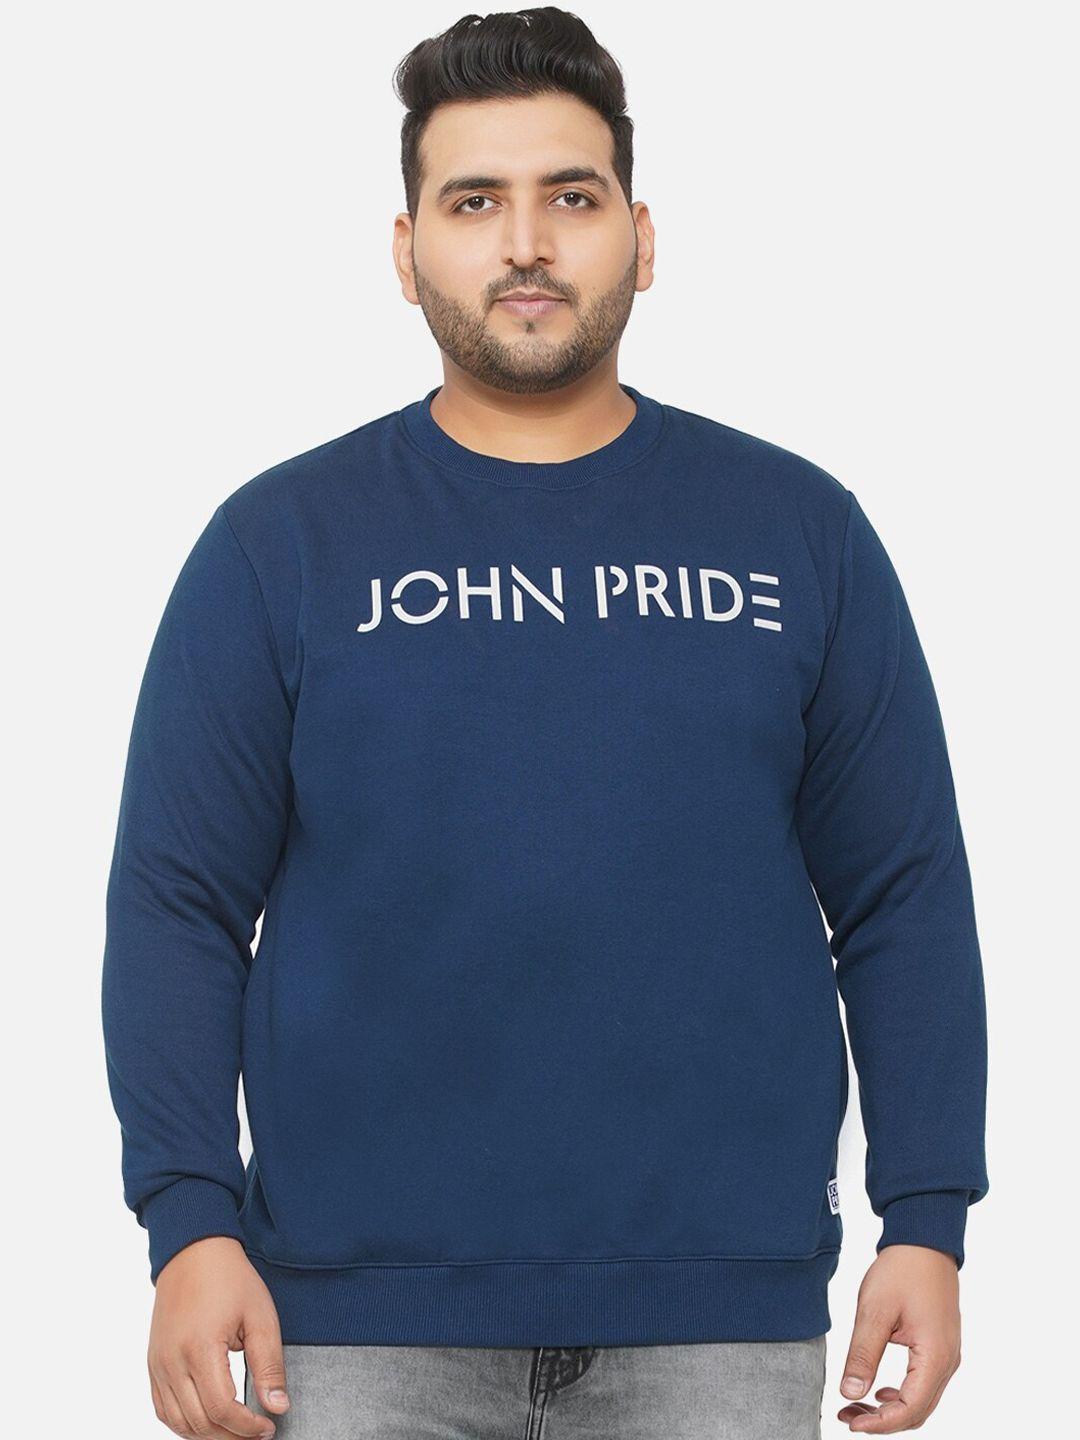 john pride men printed sweatshirt